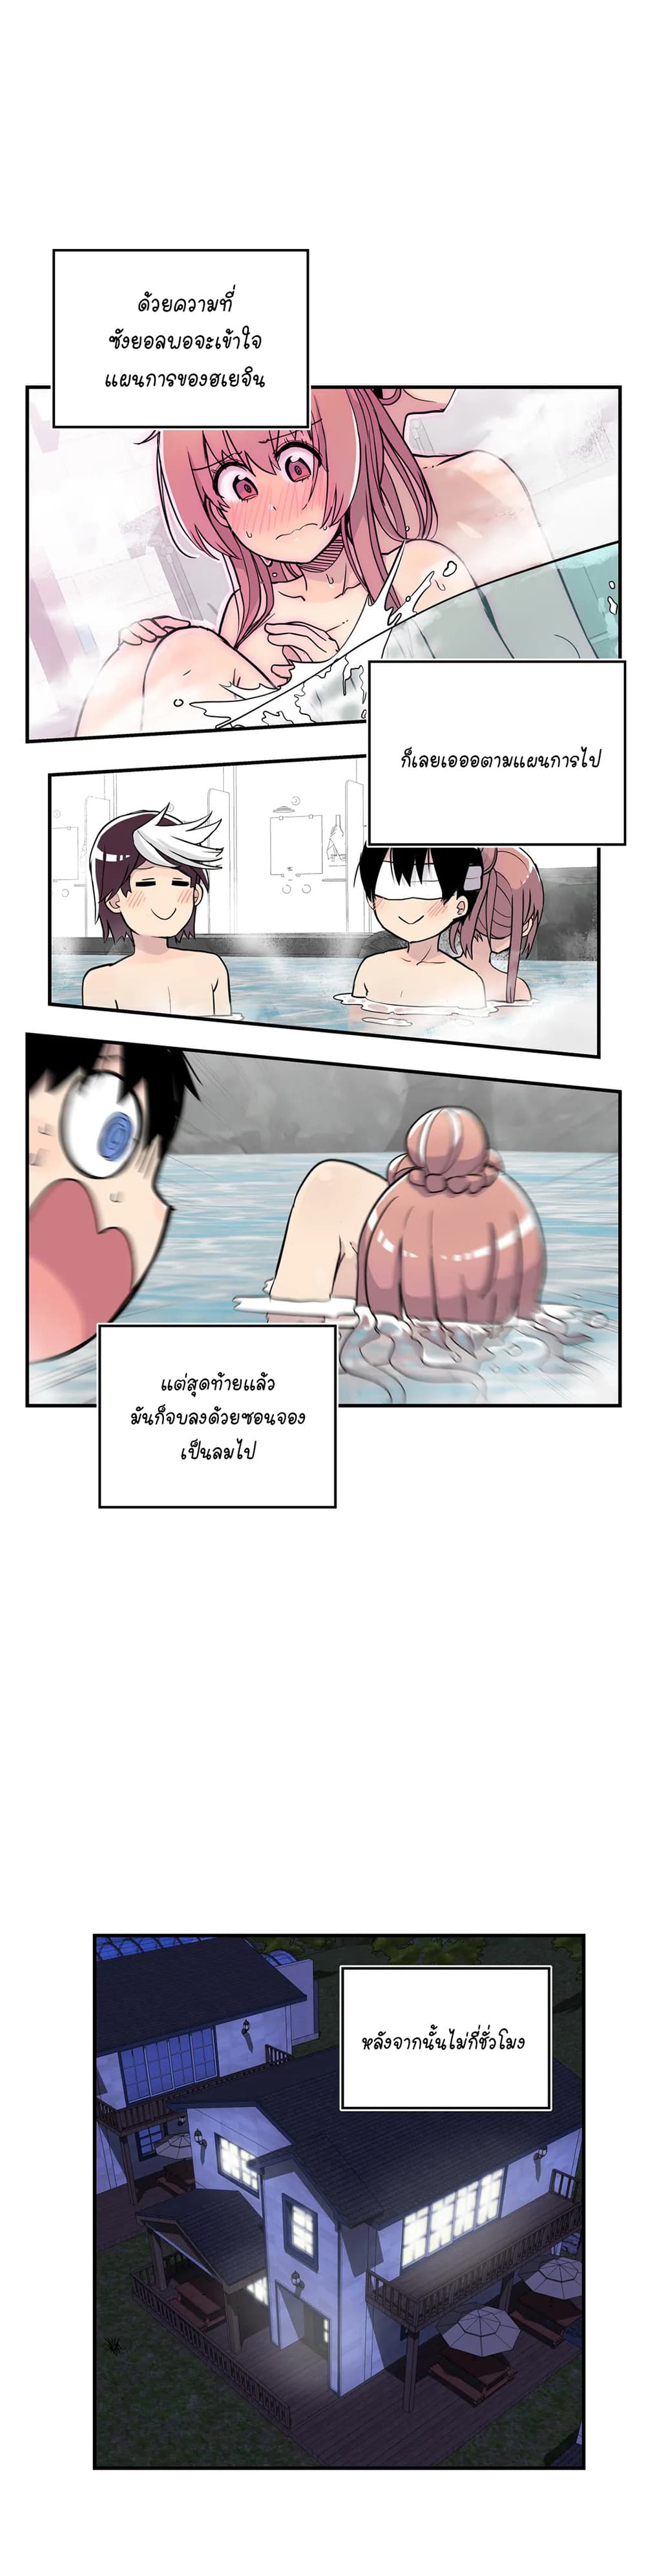 Erotic Manga Club ชมรมการ์ตูนอีโรติก 28 (1)